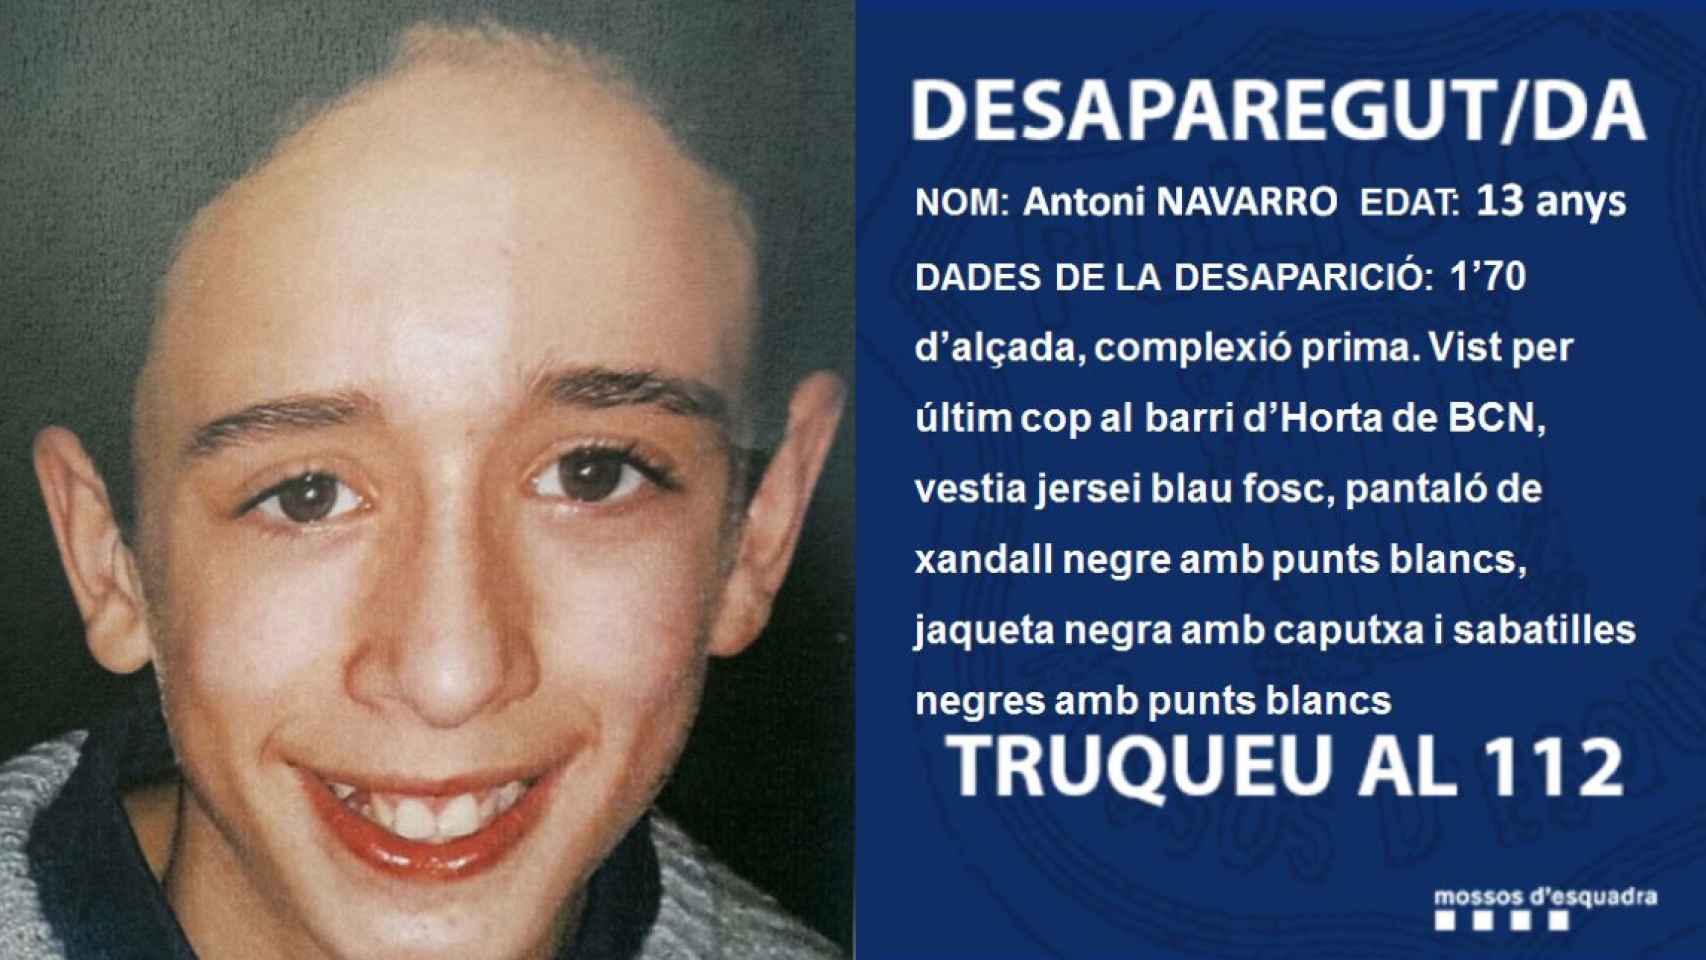 Una foto de la imagen del desaparecido difundida por los Mossos d'Esquadra